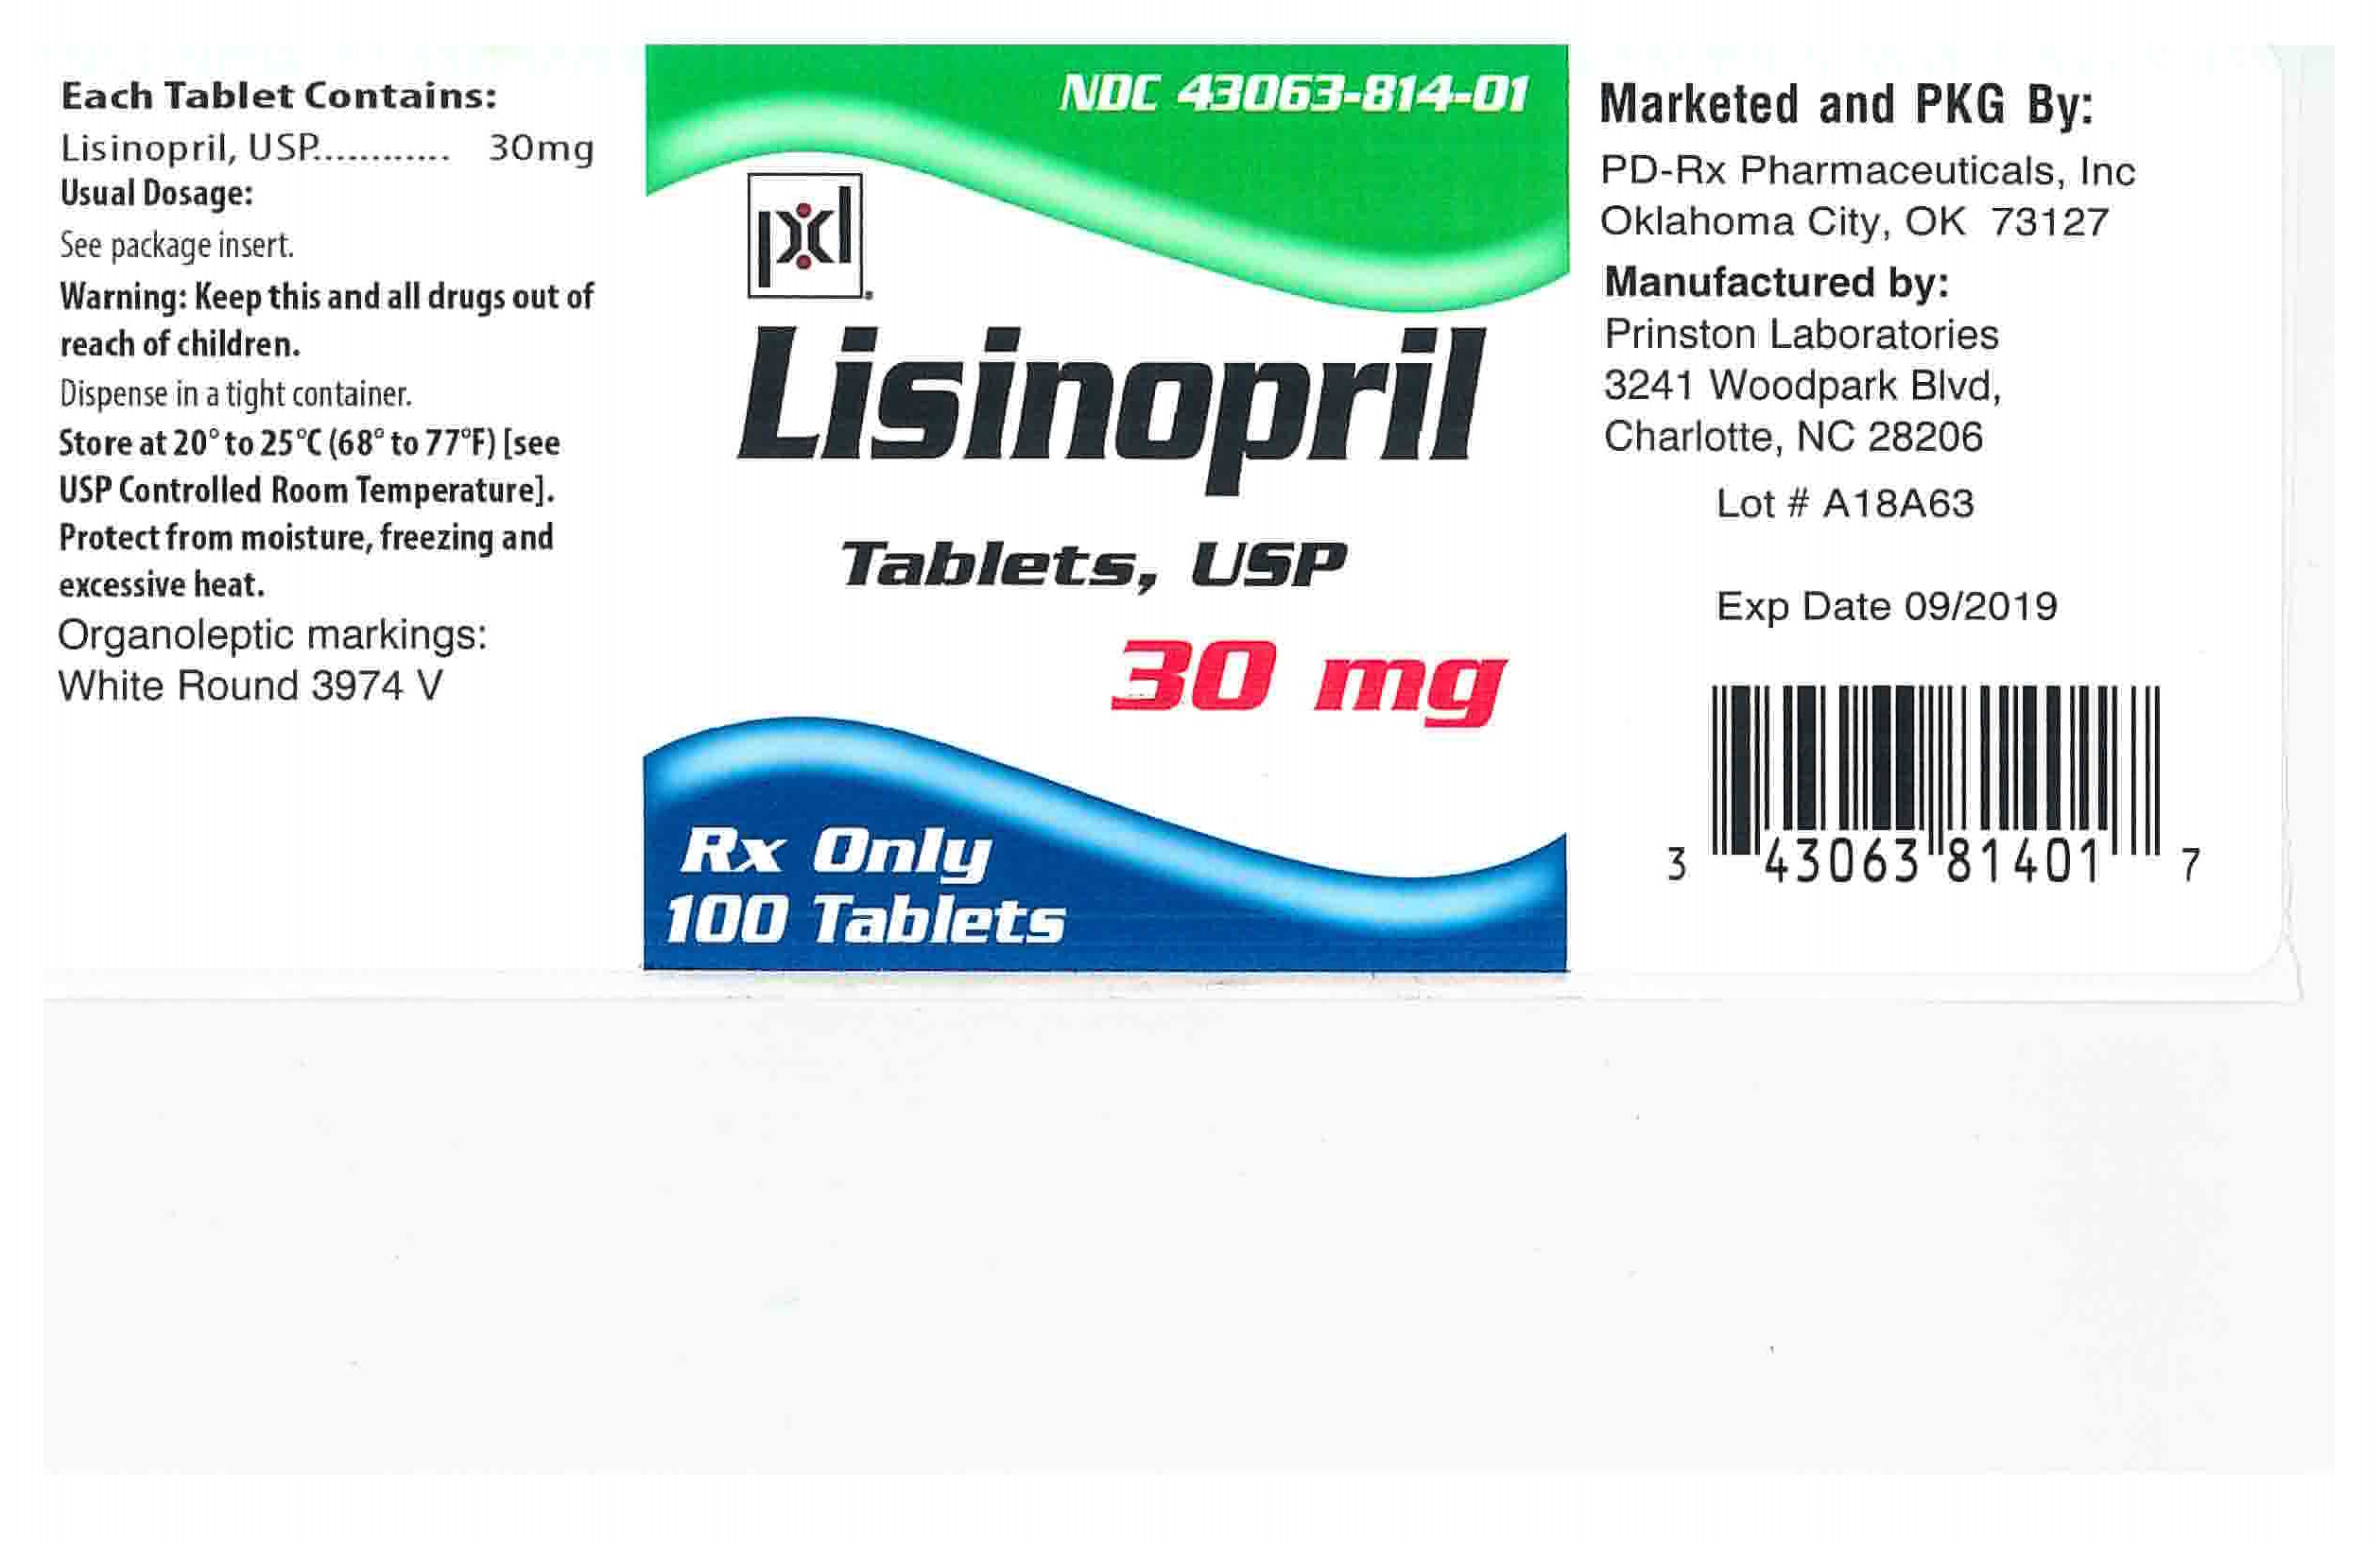 43063814 Label 30 mg